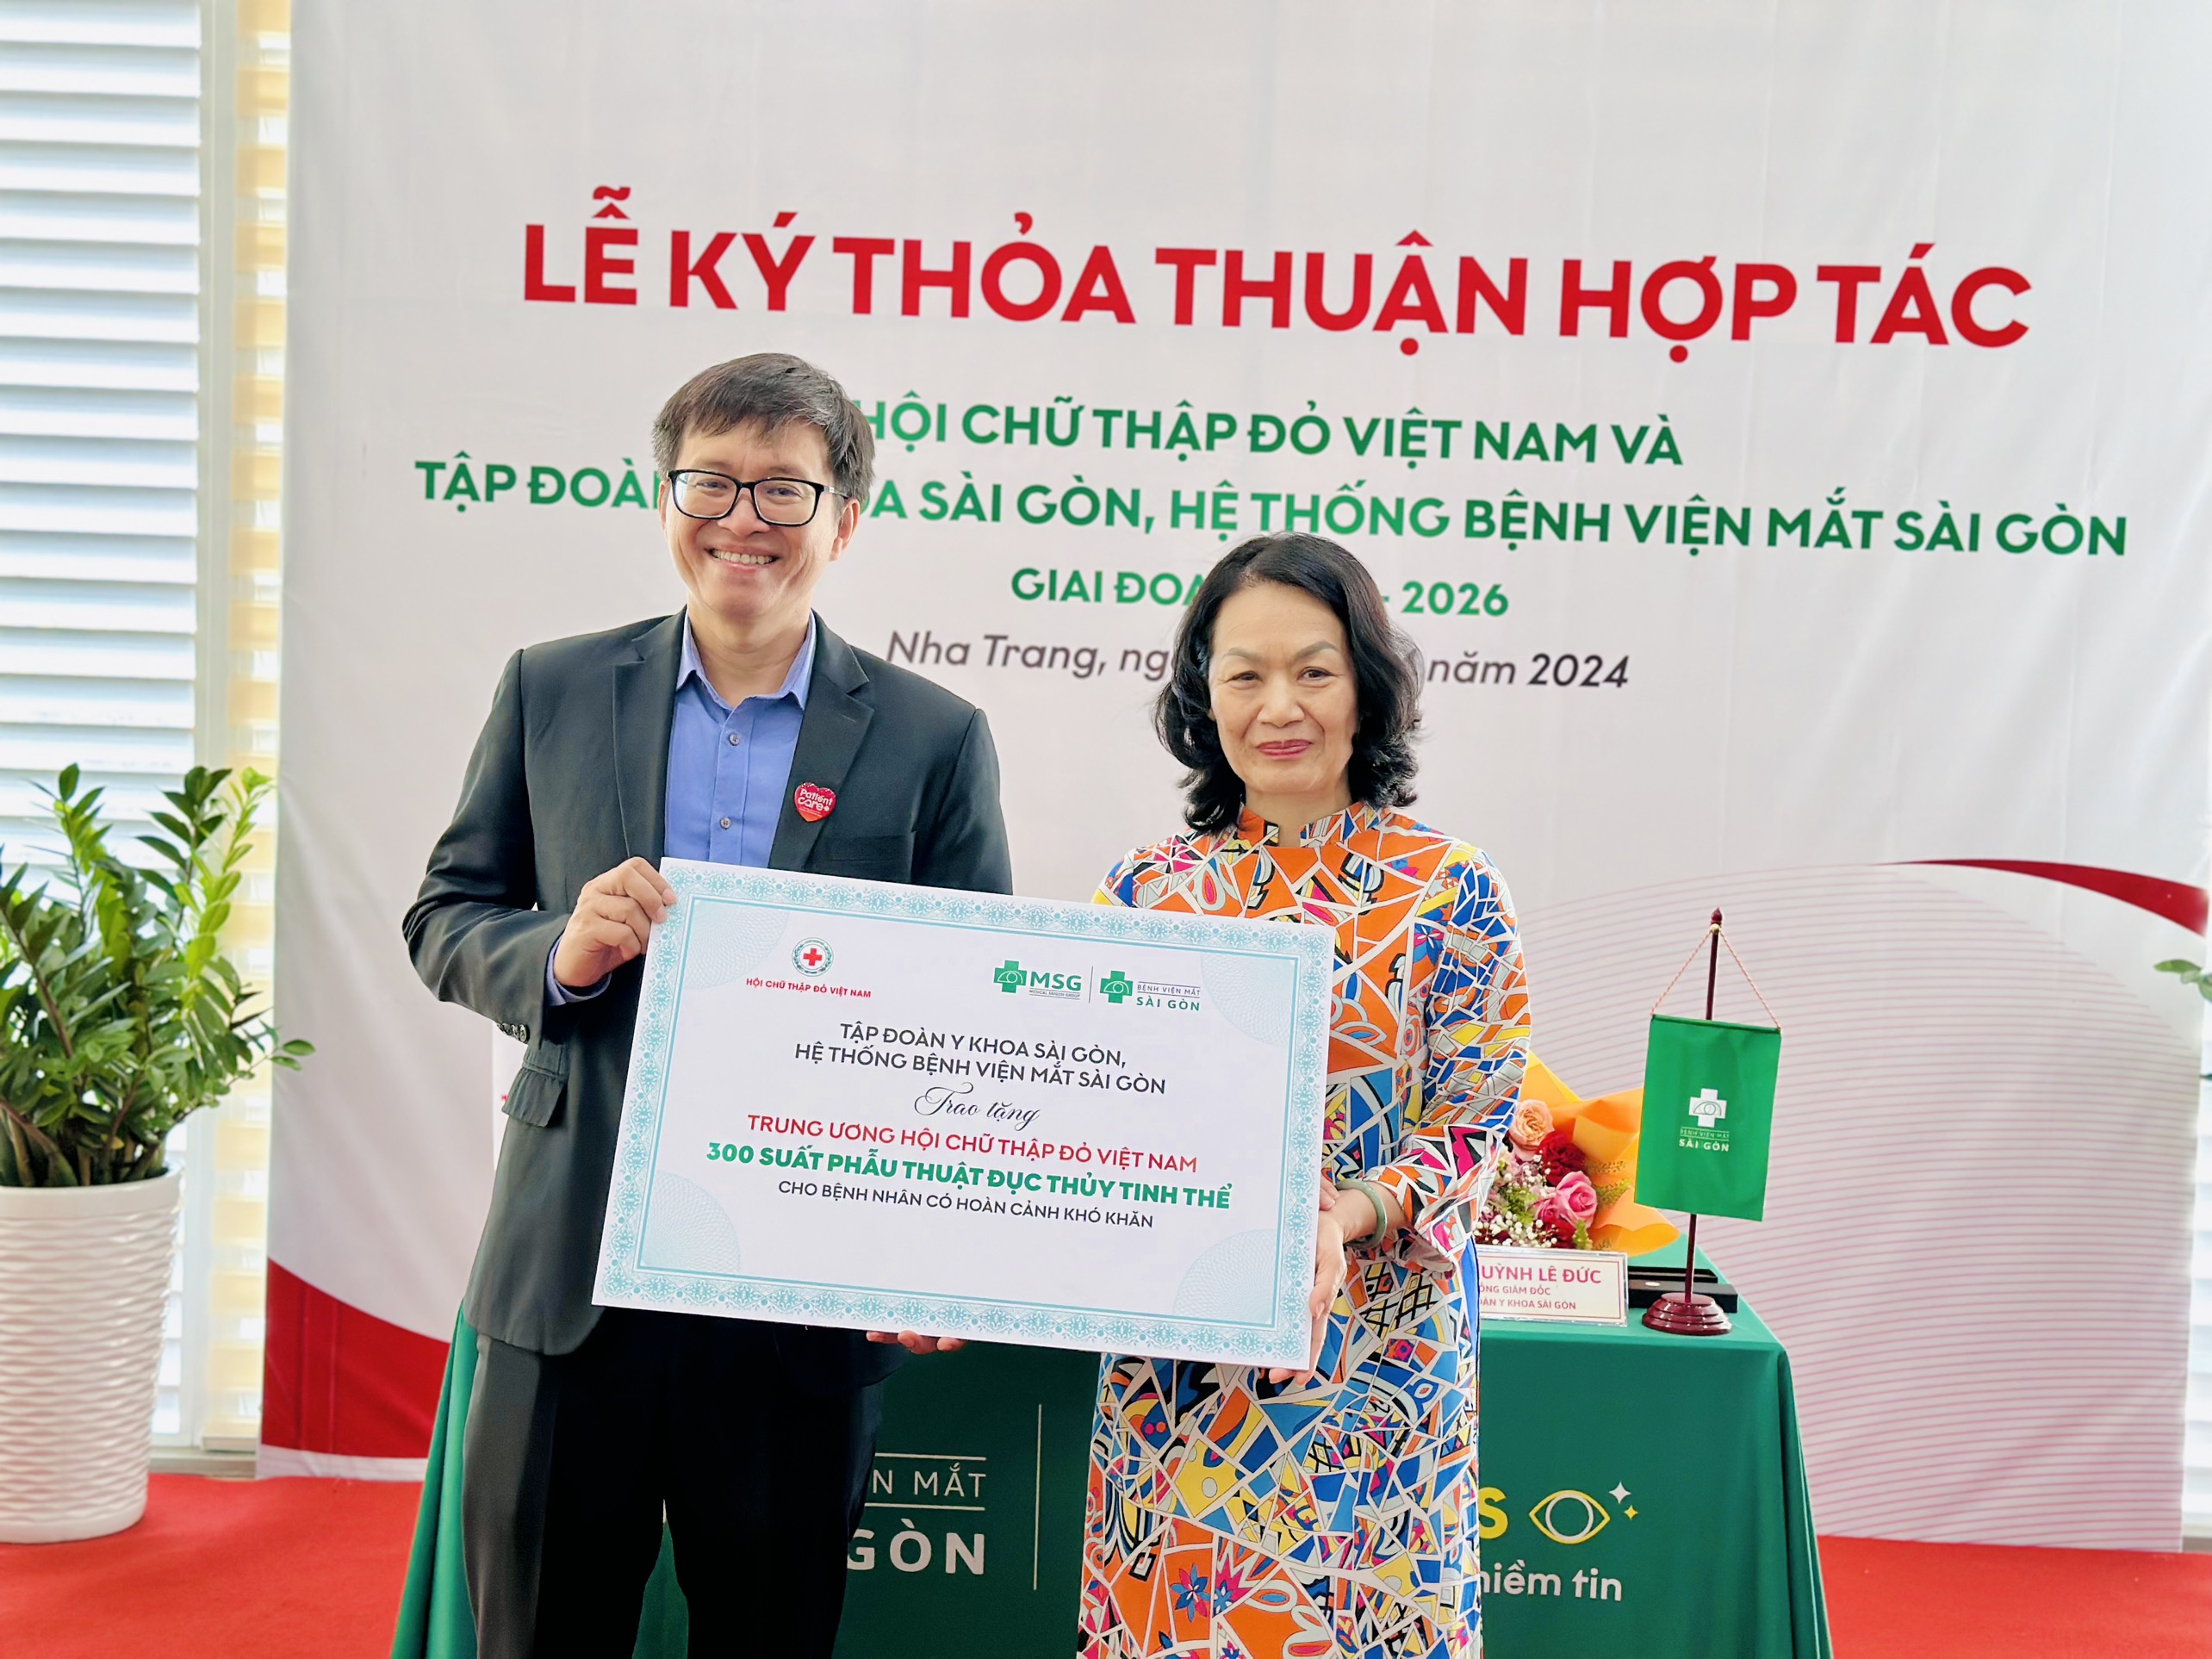 Hệ thống Bệnh viện Mắt Sài Gòn ký kết phối hợp với Hội Chữ thập đỏ Việt Nam